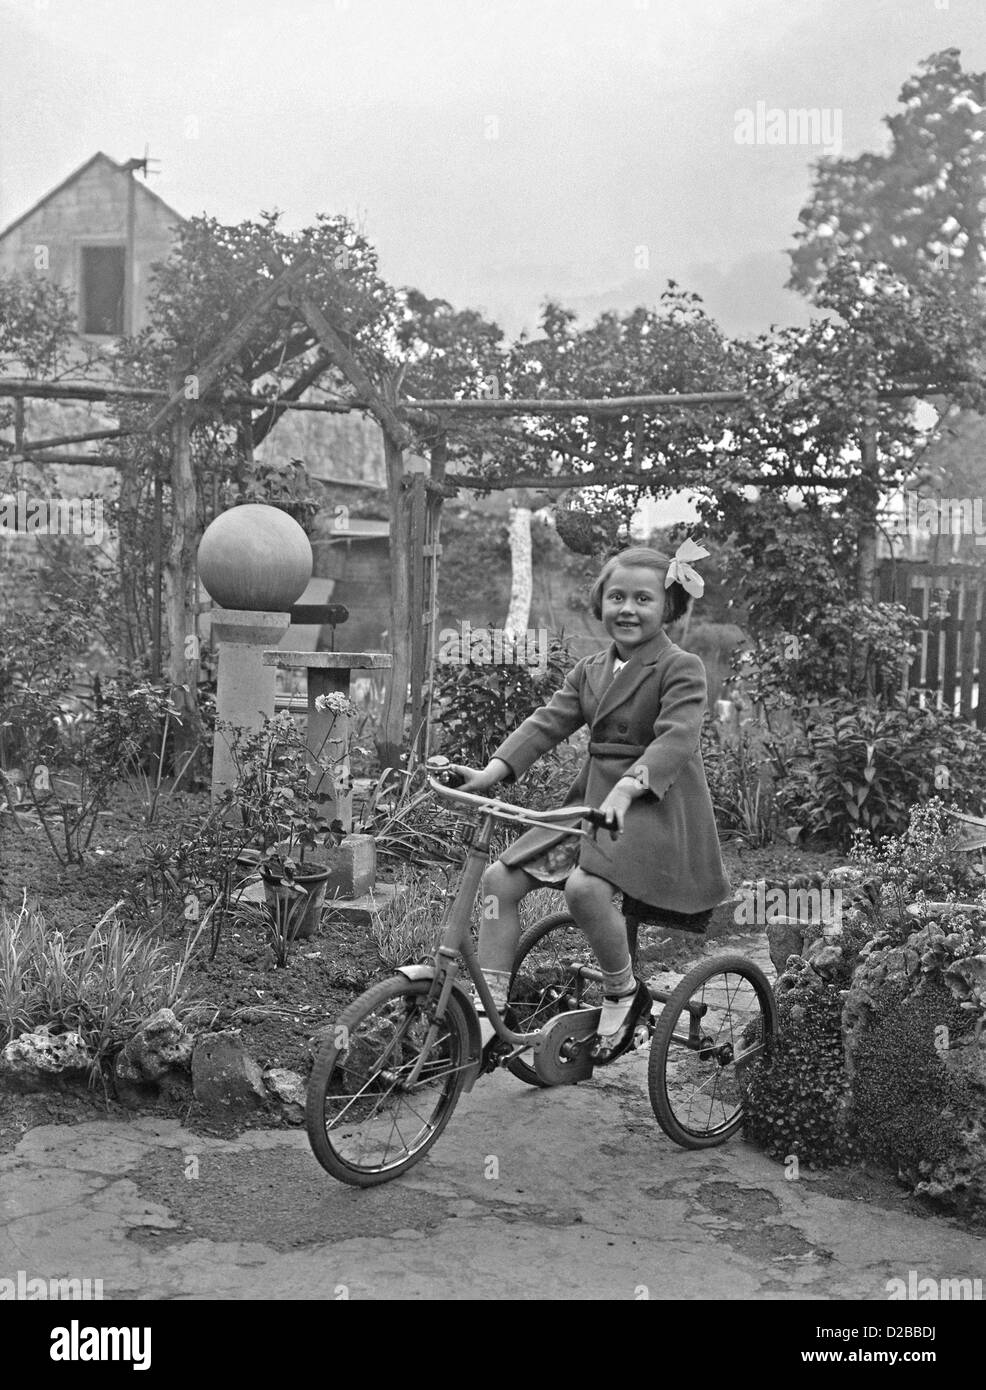 Fille jouant sur son tricycle dans un jardin, ch. 1950 Banque D'Images